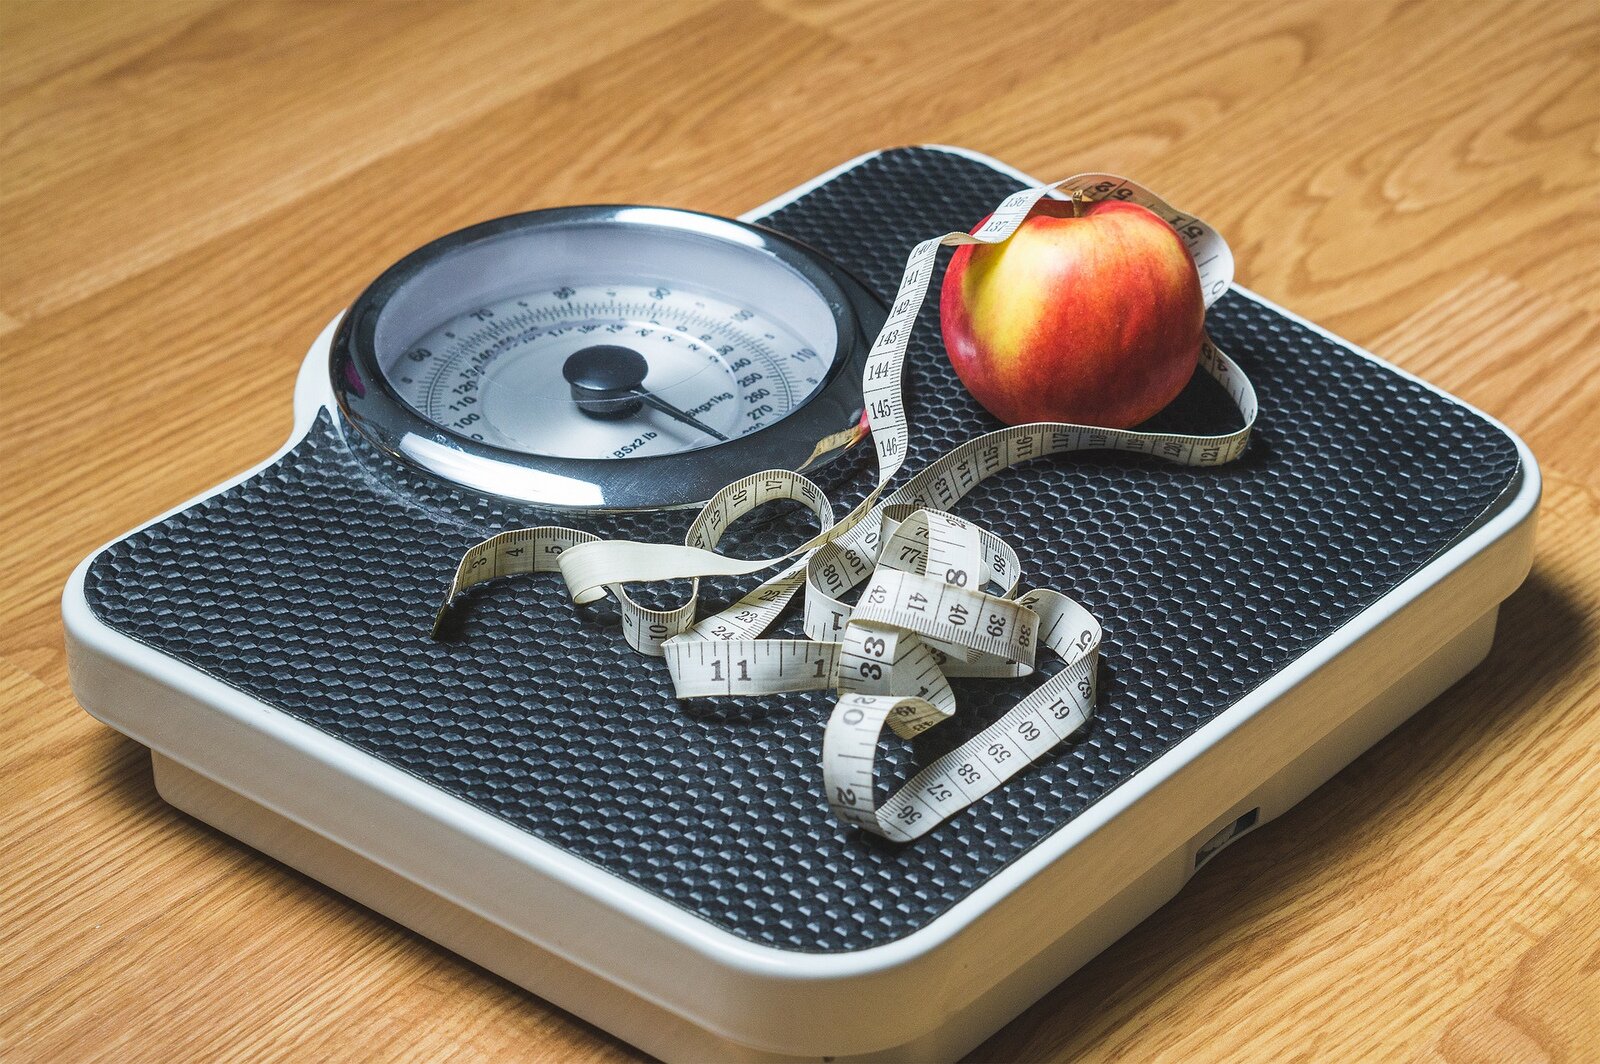 Zdjęcie przedstawia wagę, na której leży zwinięty centymetr oraz jabłko.